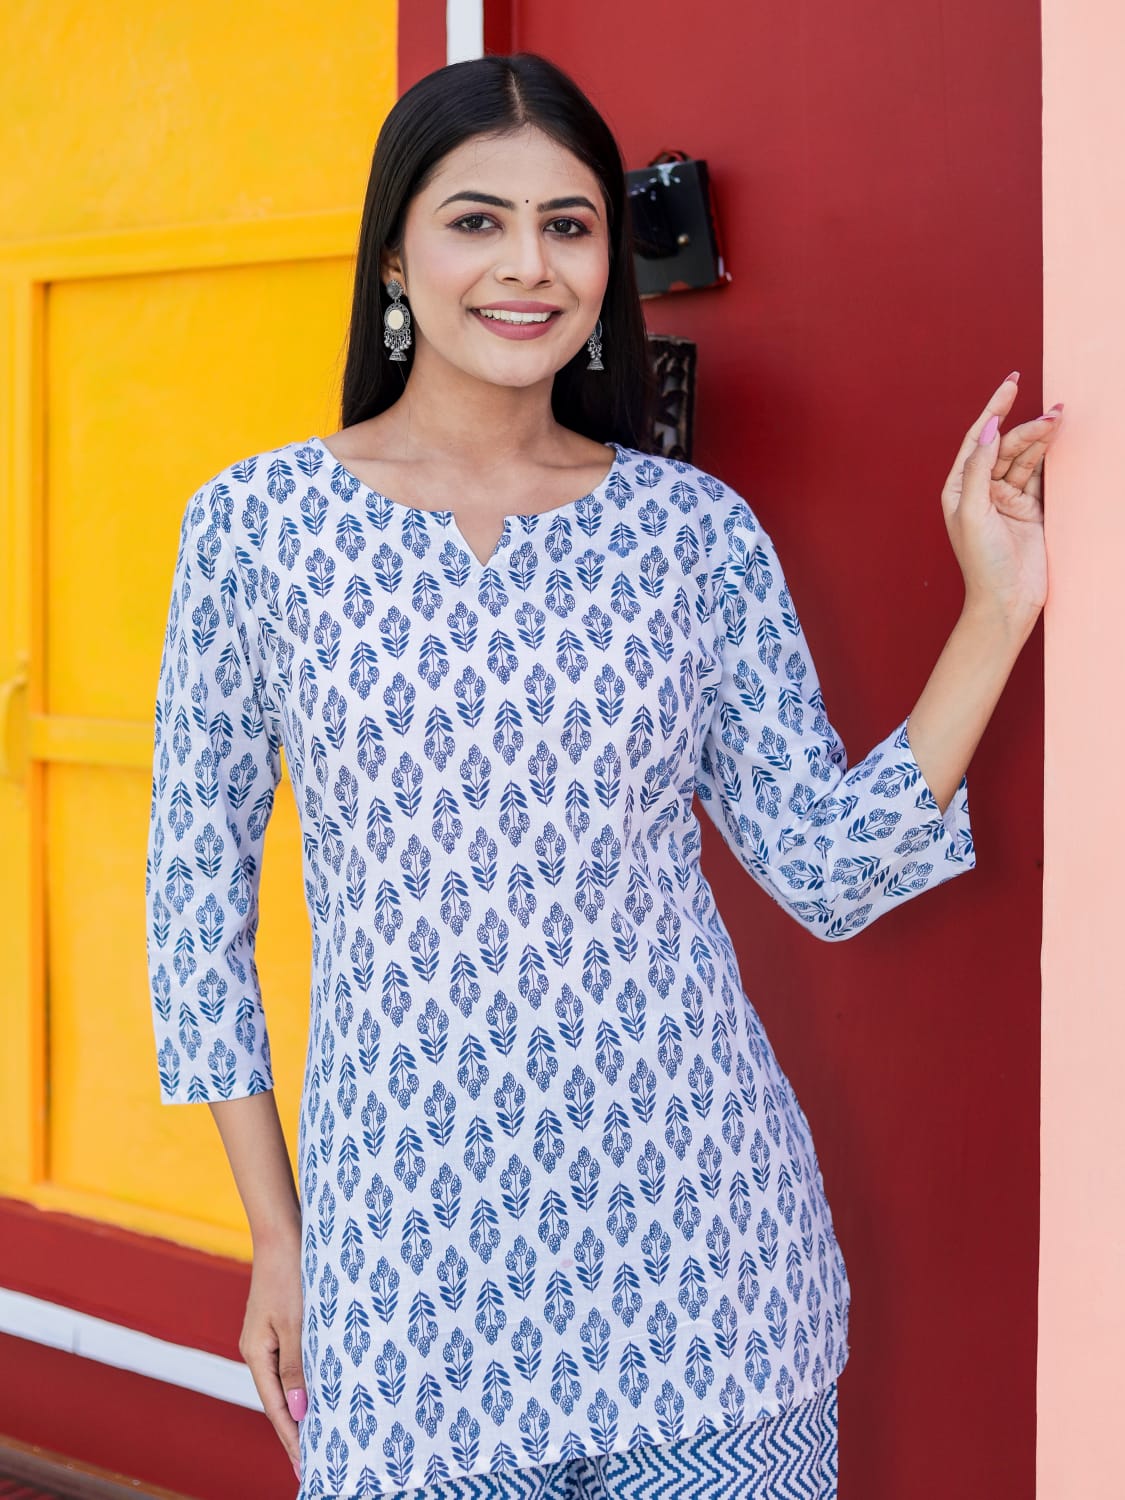 Buy AP2 KURTI Women's Cotton Printed Kaftan and Pyjama Set|Night Suit Set  for Women & Girls | Women's Kaftan Night Suit Set Blue at Amazon.in